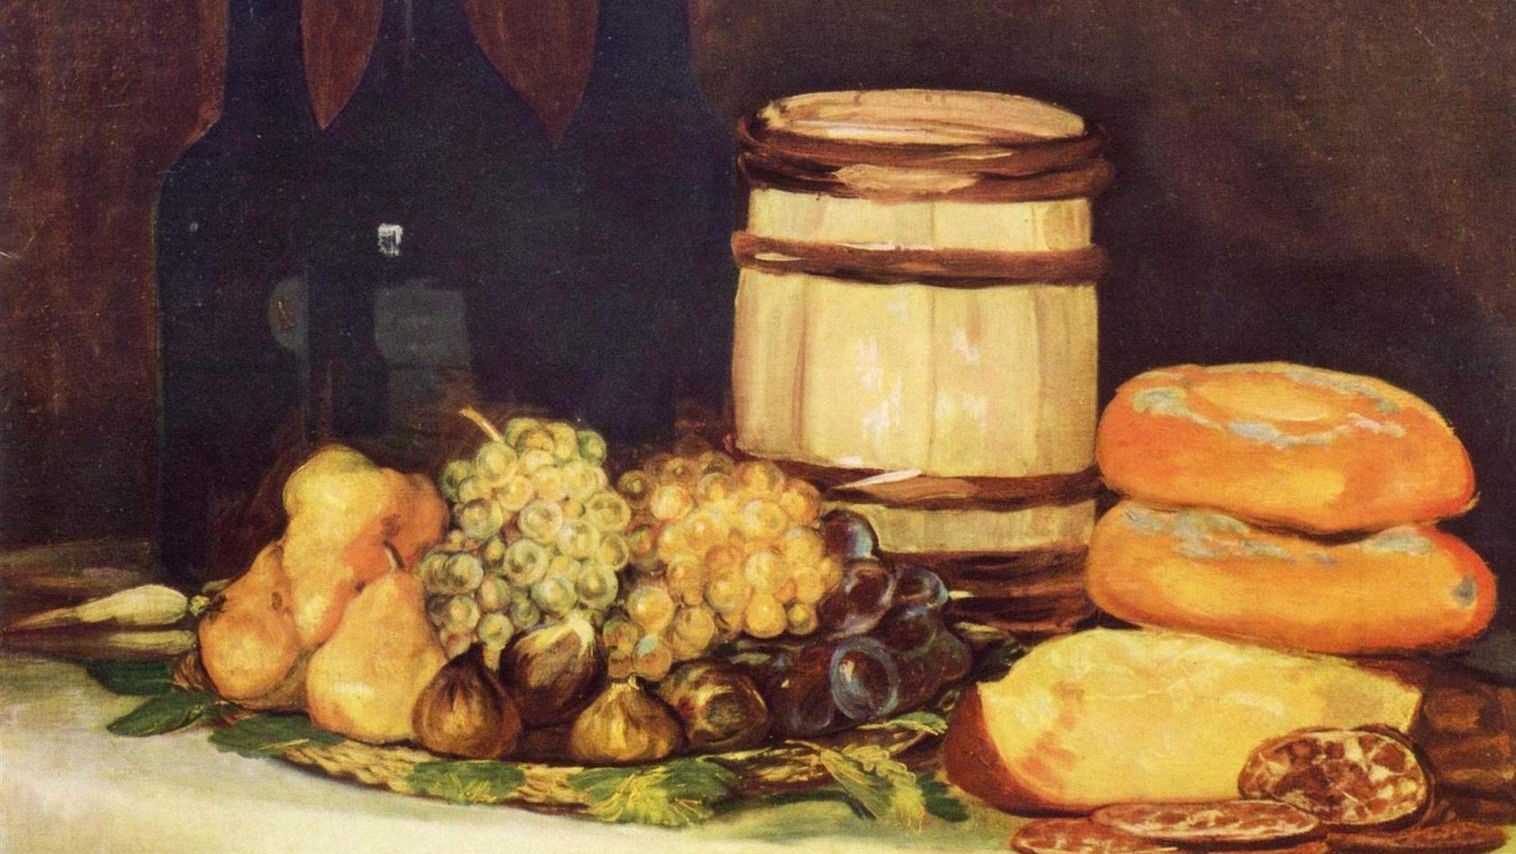 Франсиско де Гойя. Натюрморт с фруктами, бутылками, хлебом. (фрагмент) 1826